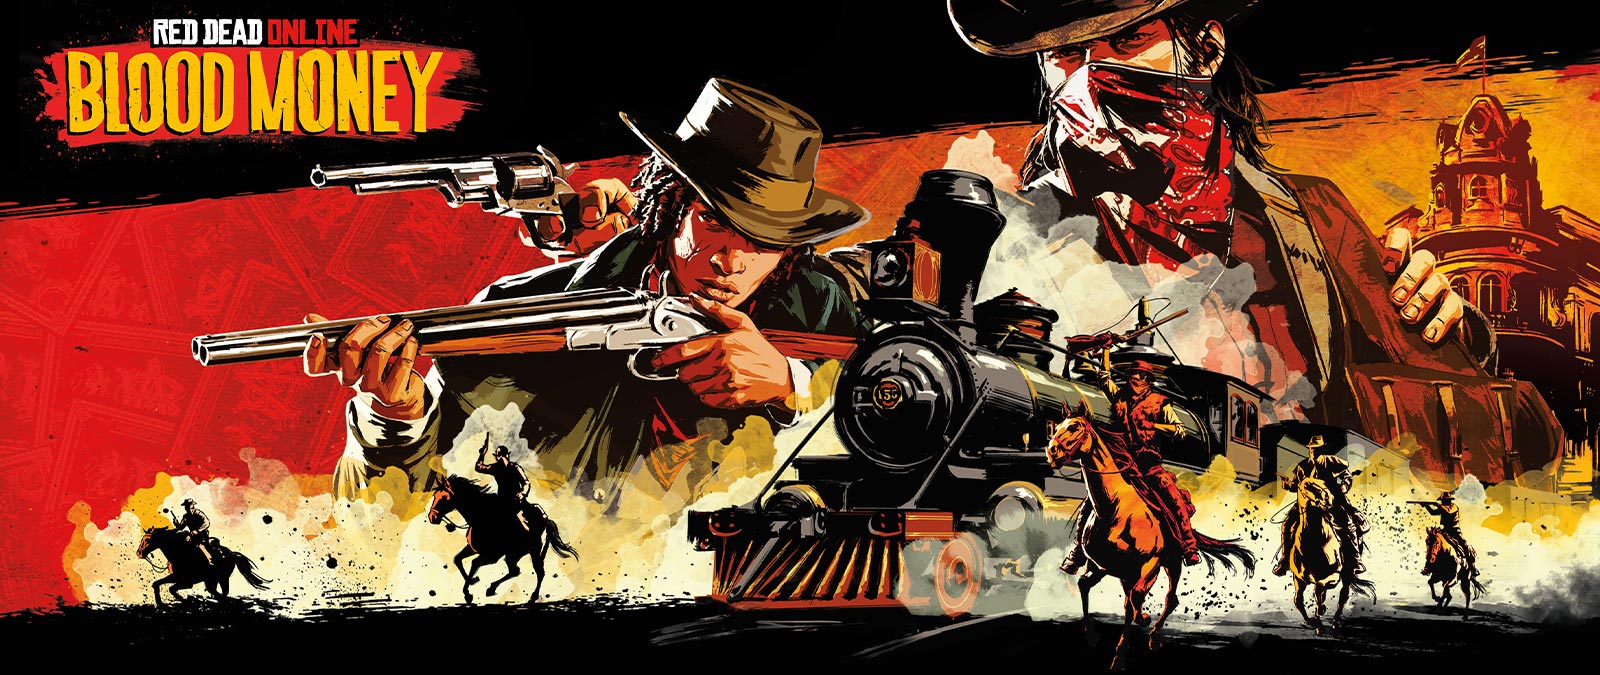 Red Dead Online, Moonshiners, En bister man som håller i en pistol och en bunt med kontanter mot en stiliserad bakgrund med hembränningsutrustning och en vagn. 